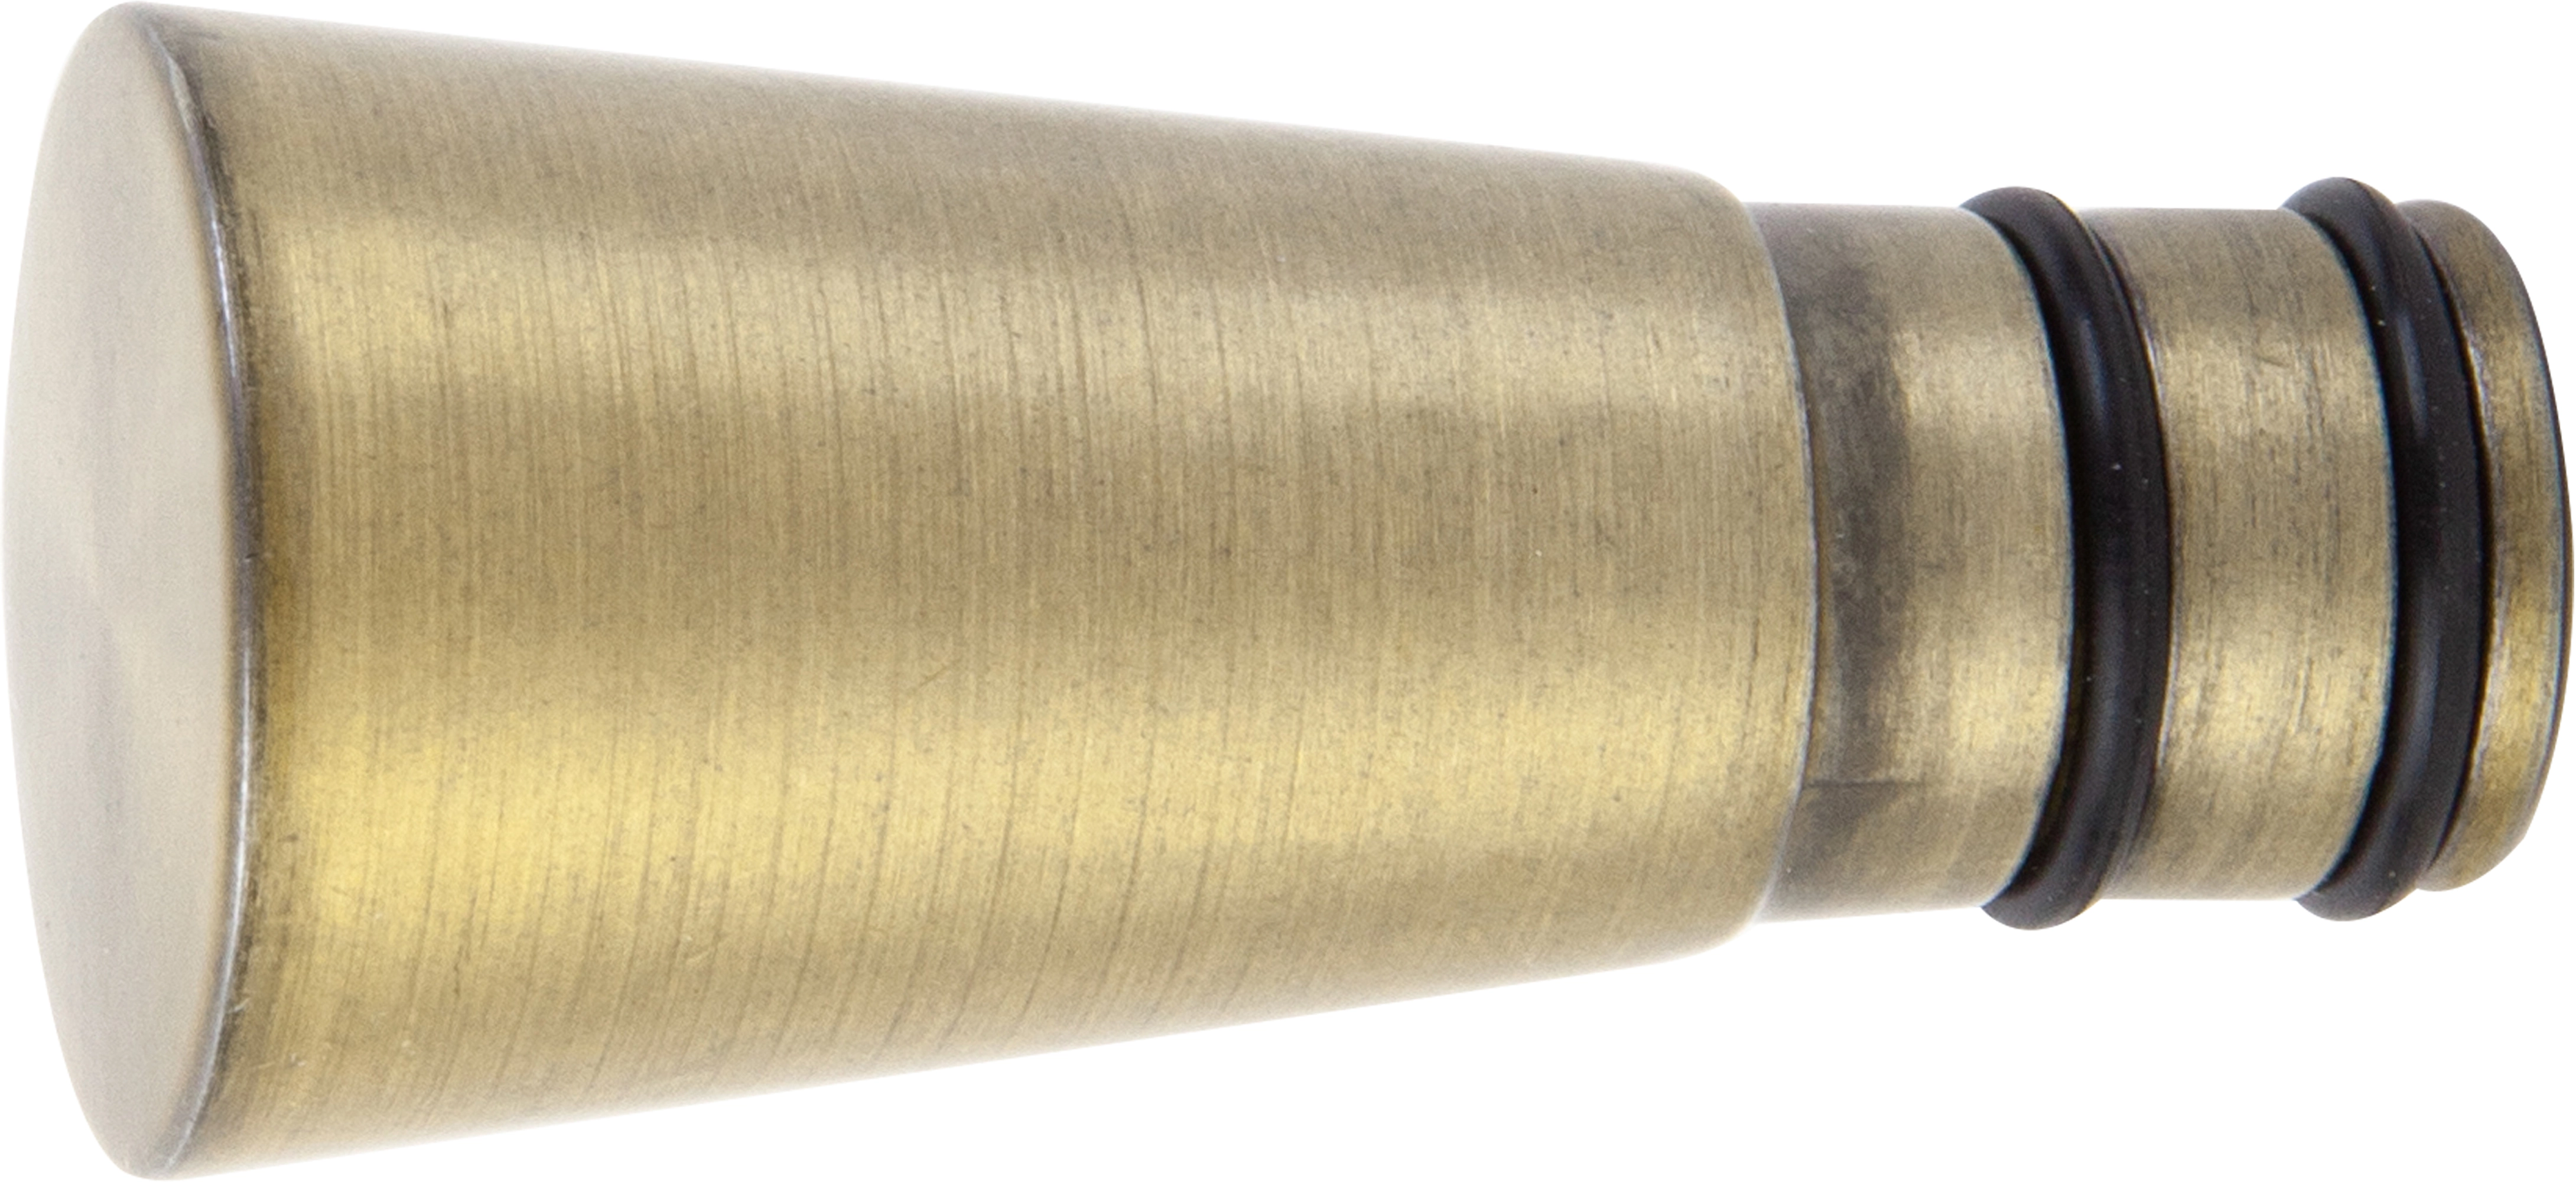 Gardinenstangen-Endstück Altgold Kegelform Ø 19 mm bei OBI kaufen